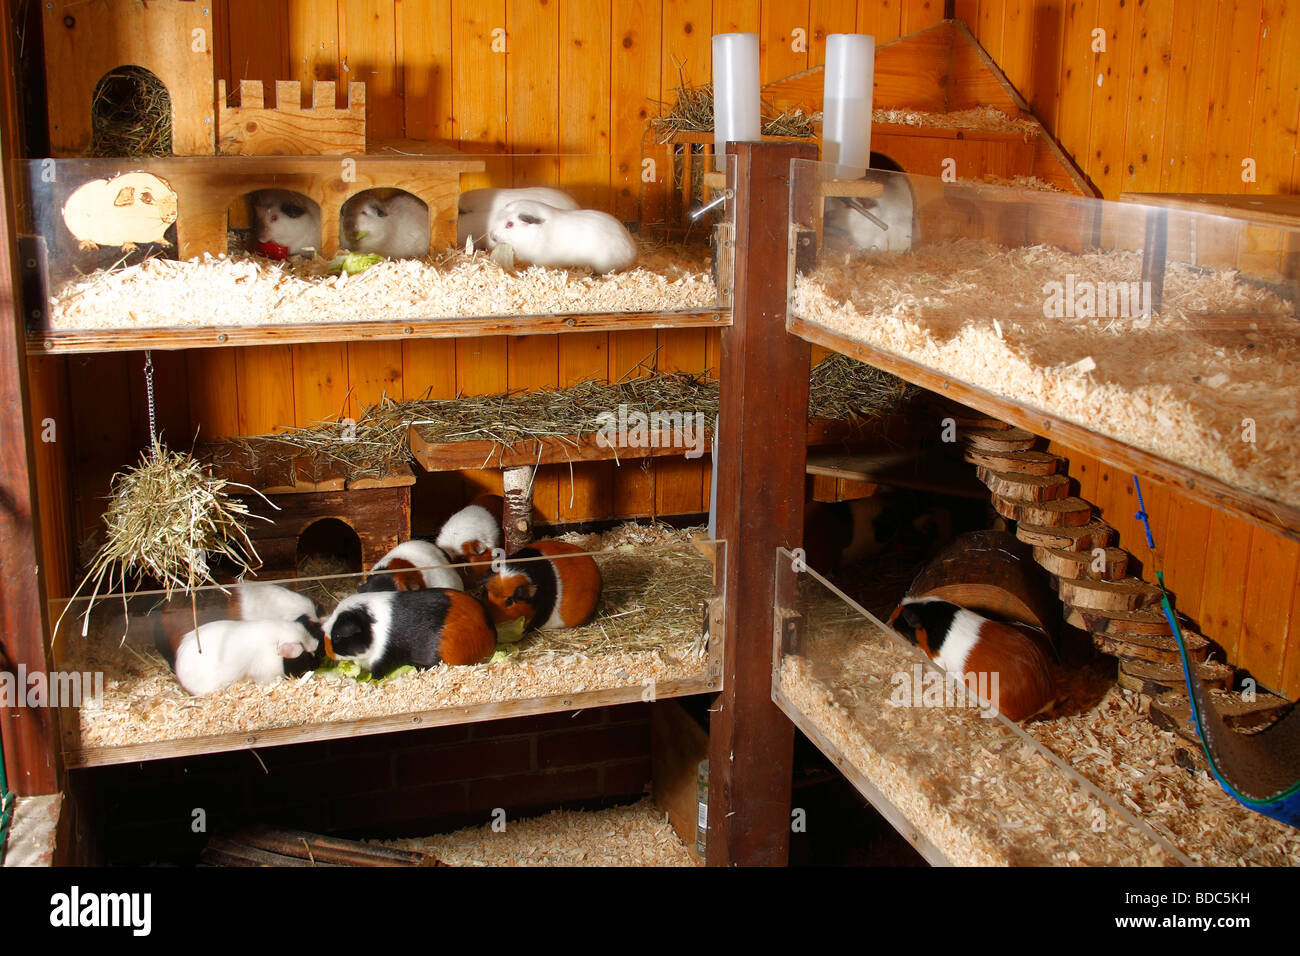 Guinea Pigs in enclosure Stock Photo